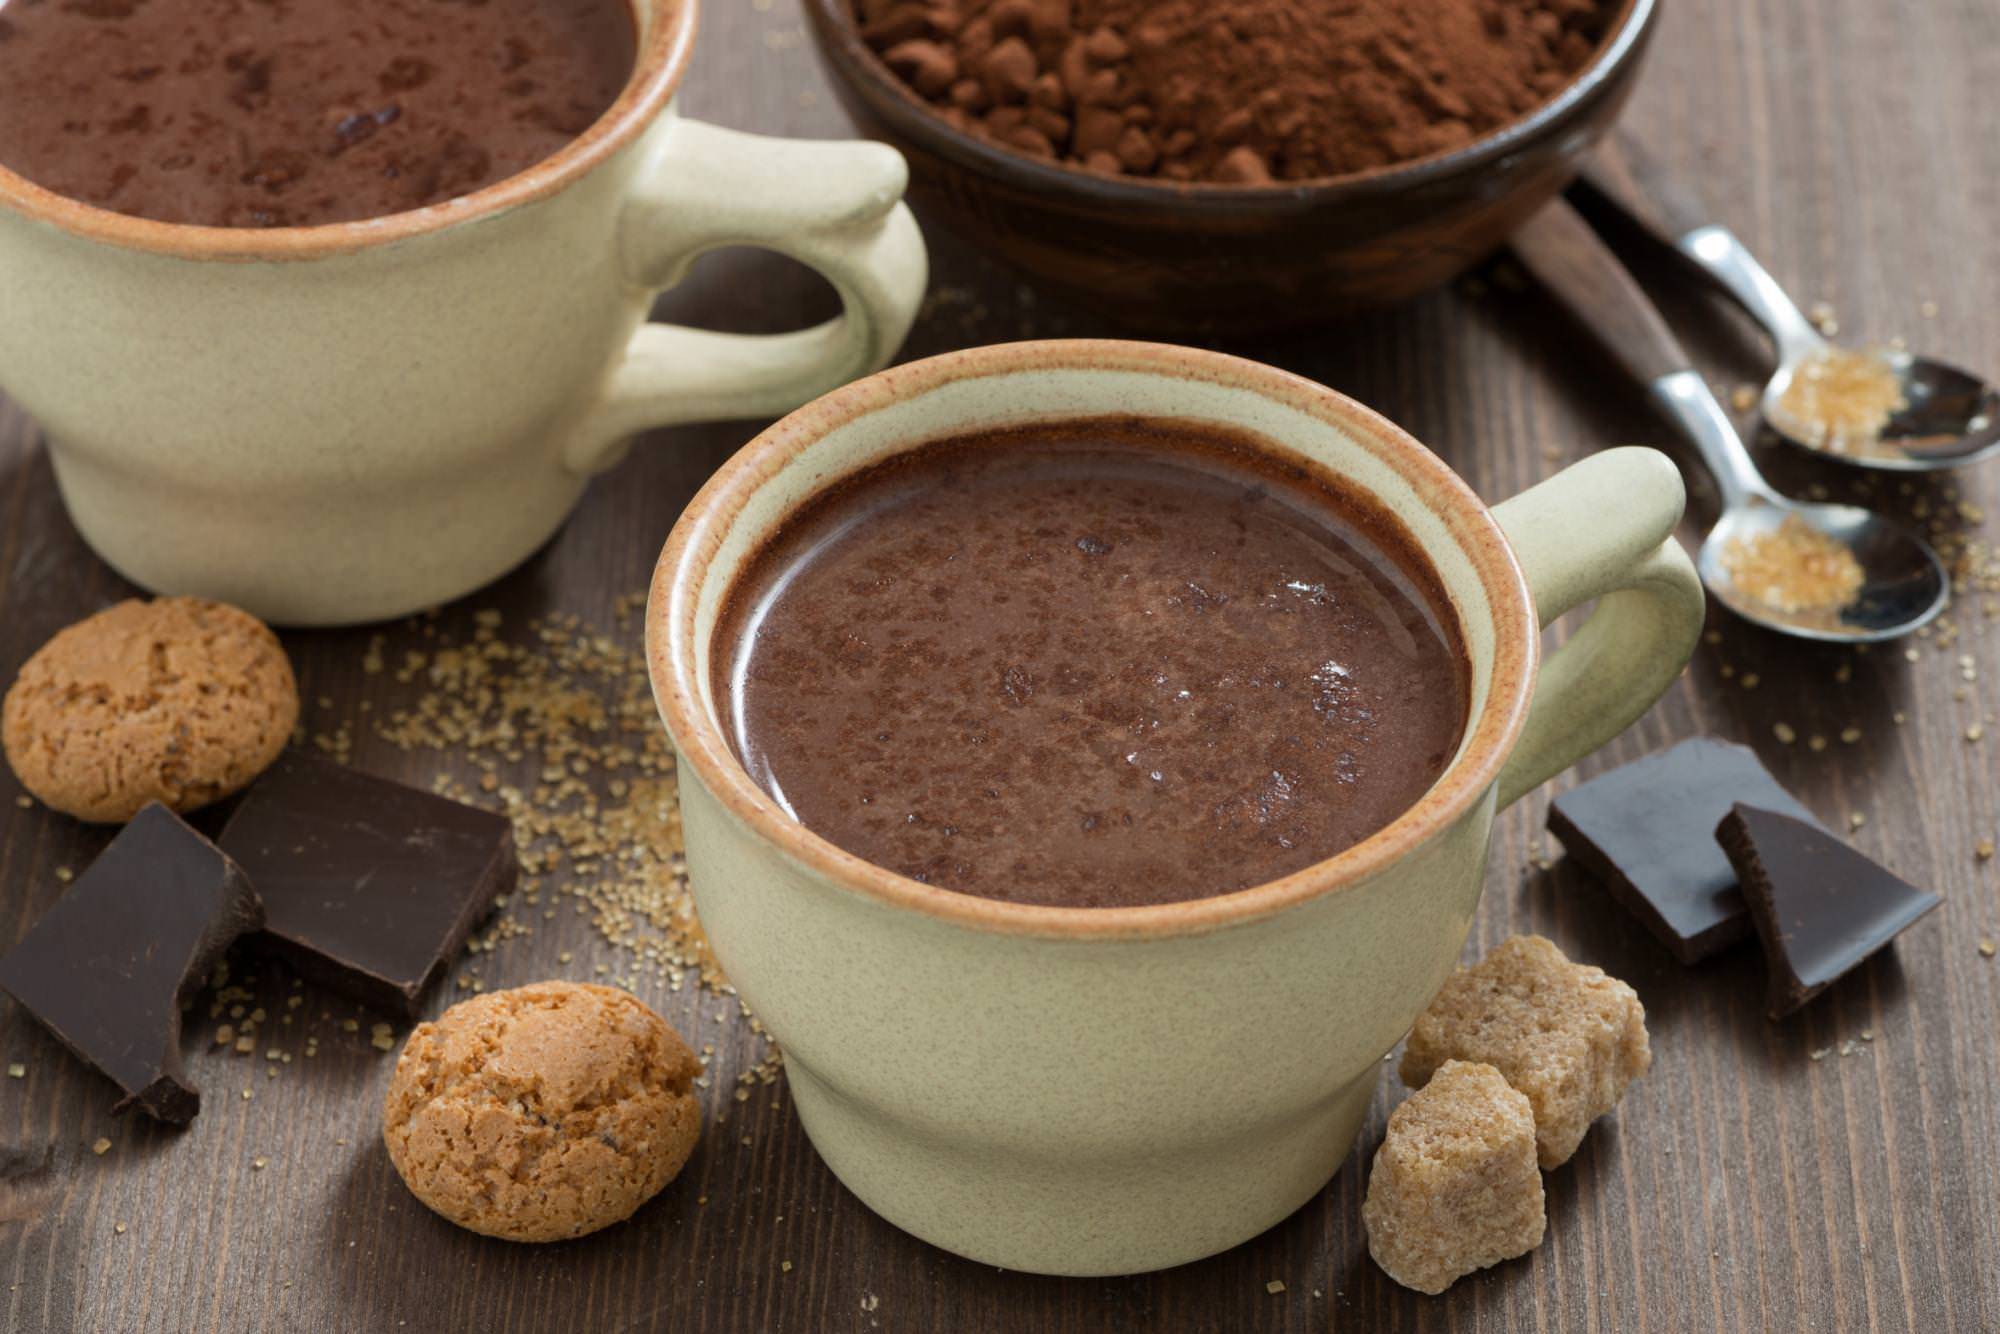 Горячий шоколад - как сварить вкусный и полезный напиток дома по рецептам с фото